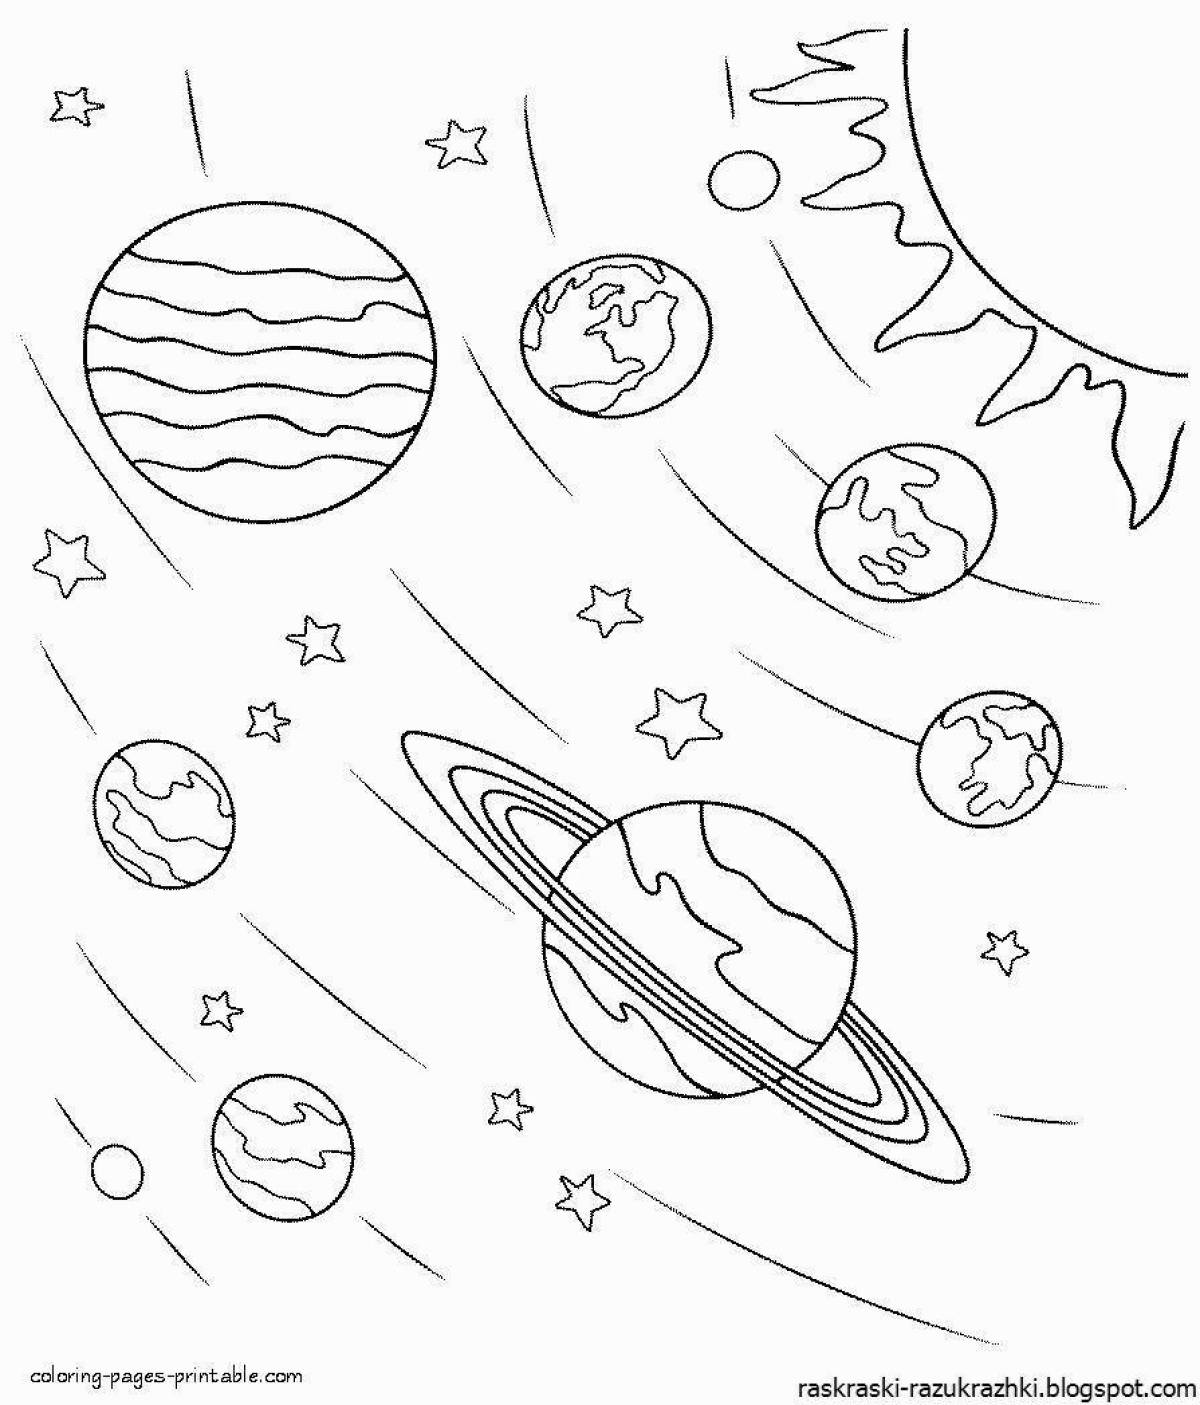 Красивая страница раскраски солнечной системы для детей